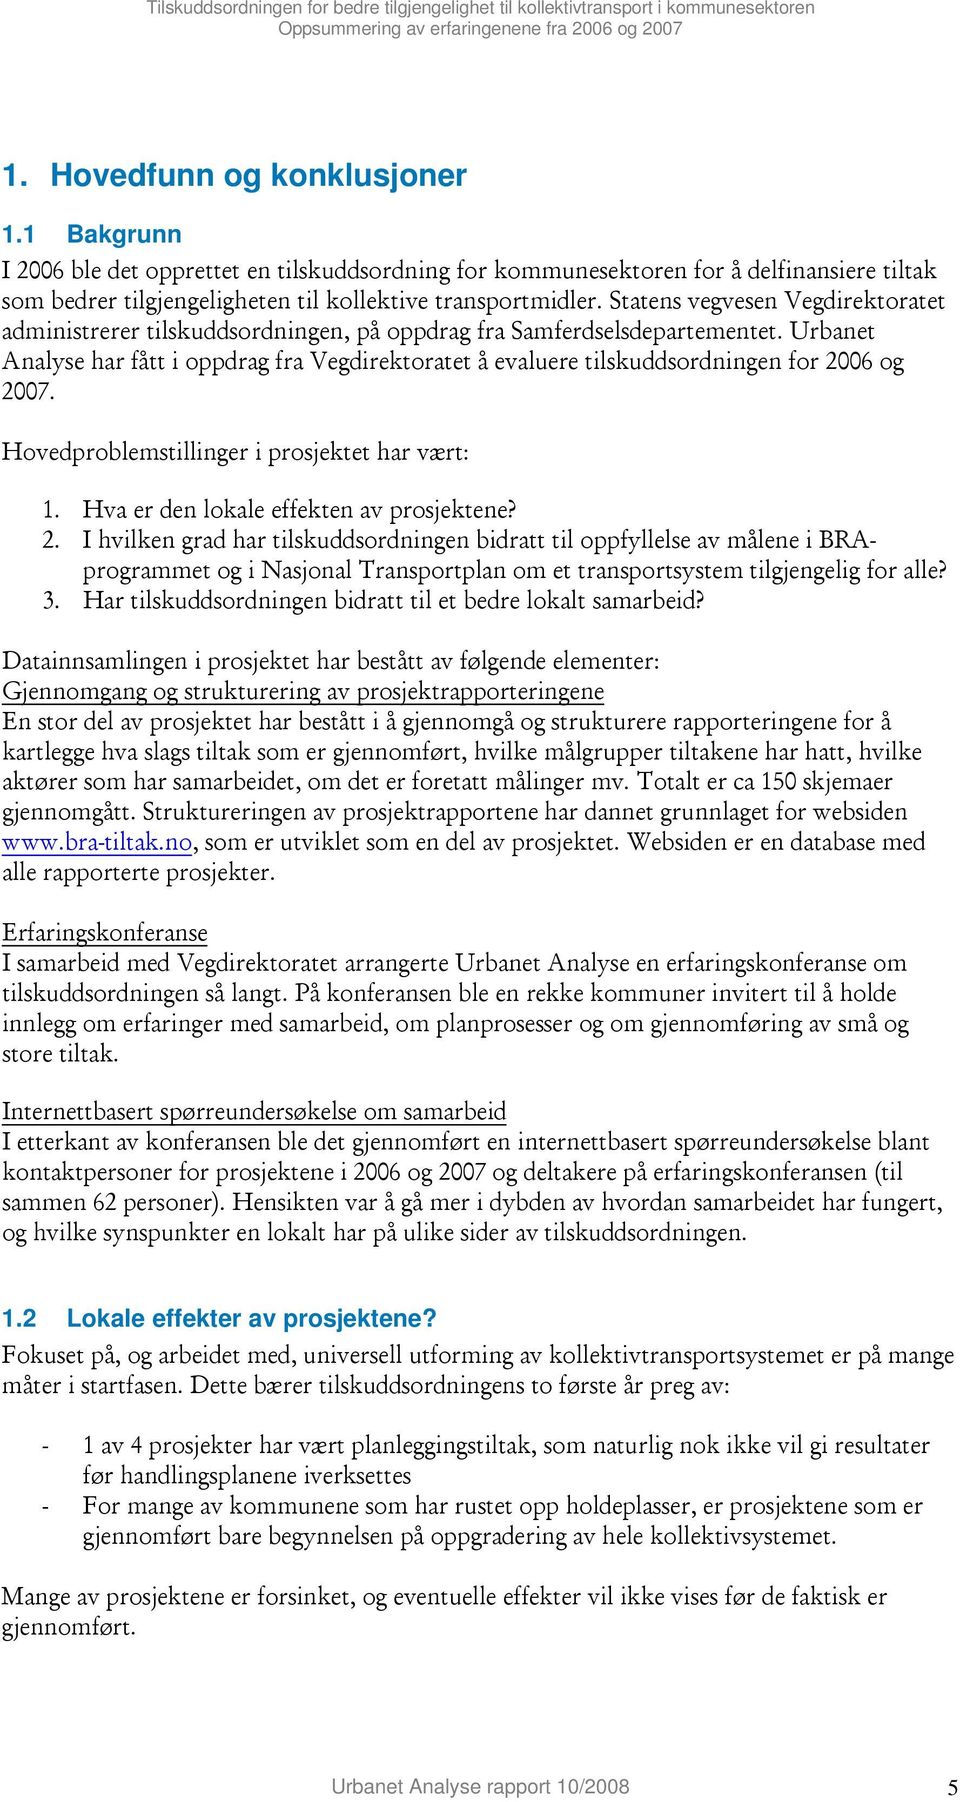 Statens vegvesen Vegdirektoratet administrerer tilskuddsordningen, på oppdrag fra Samferdselsdepartementet.